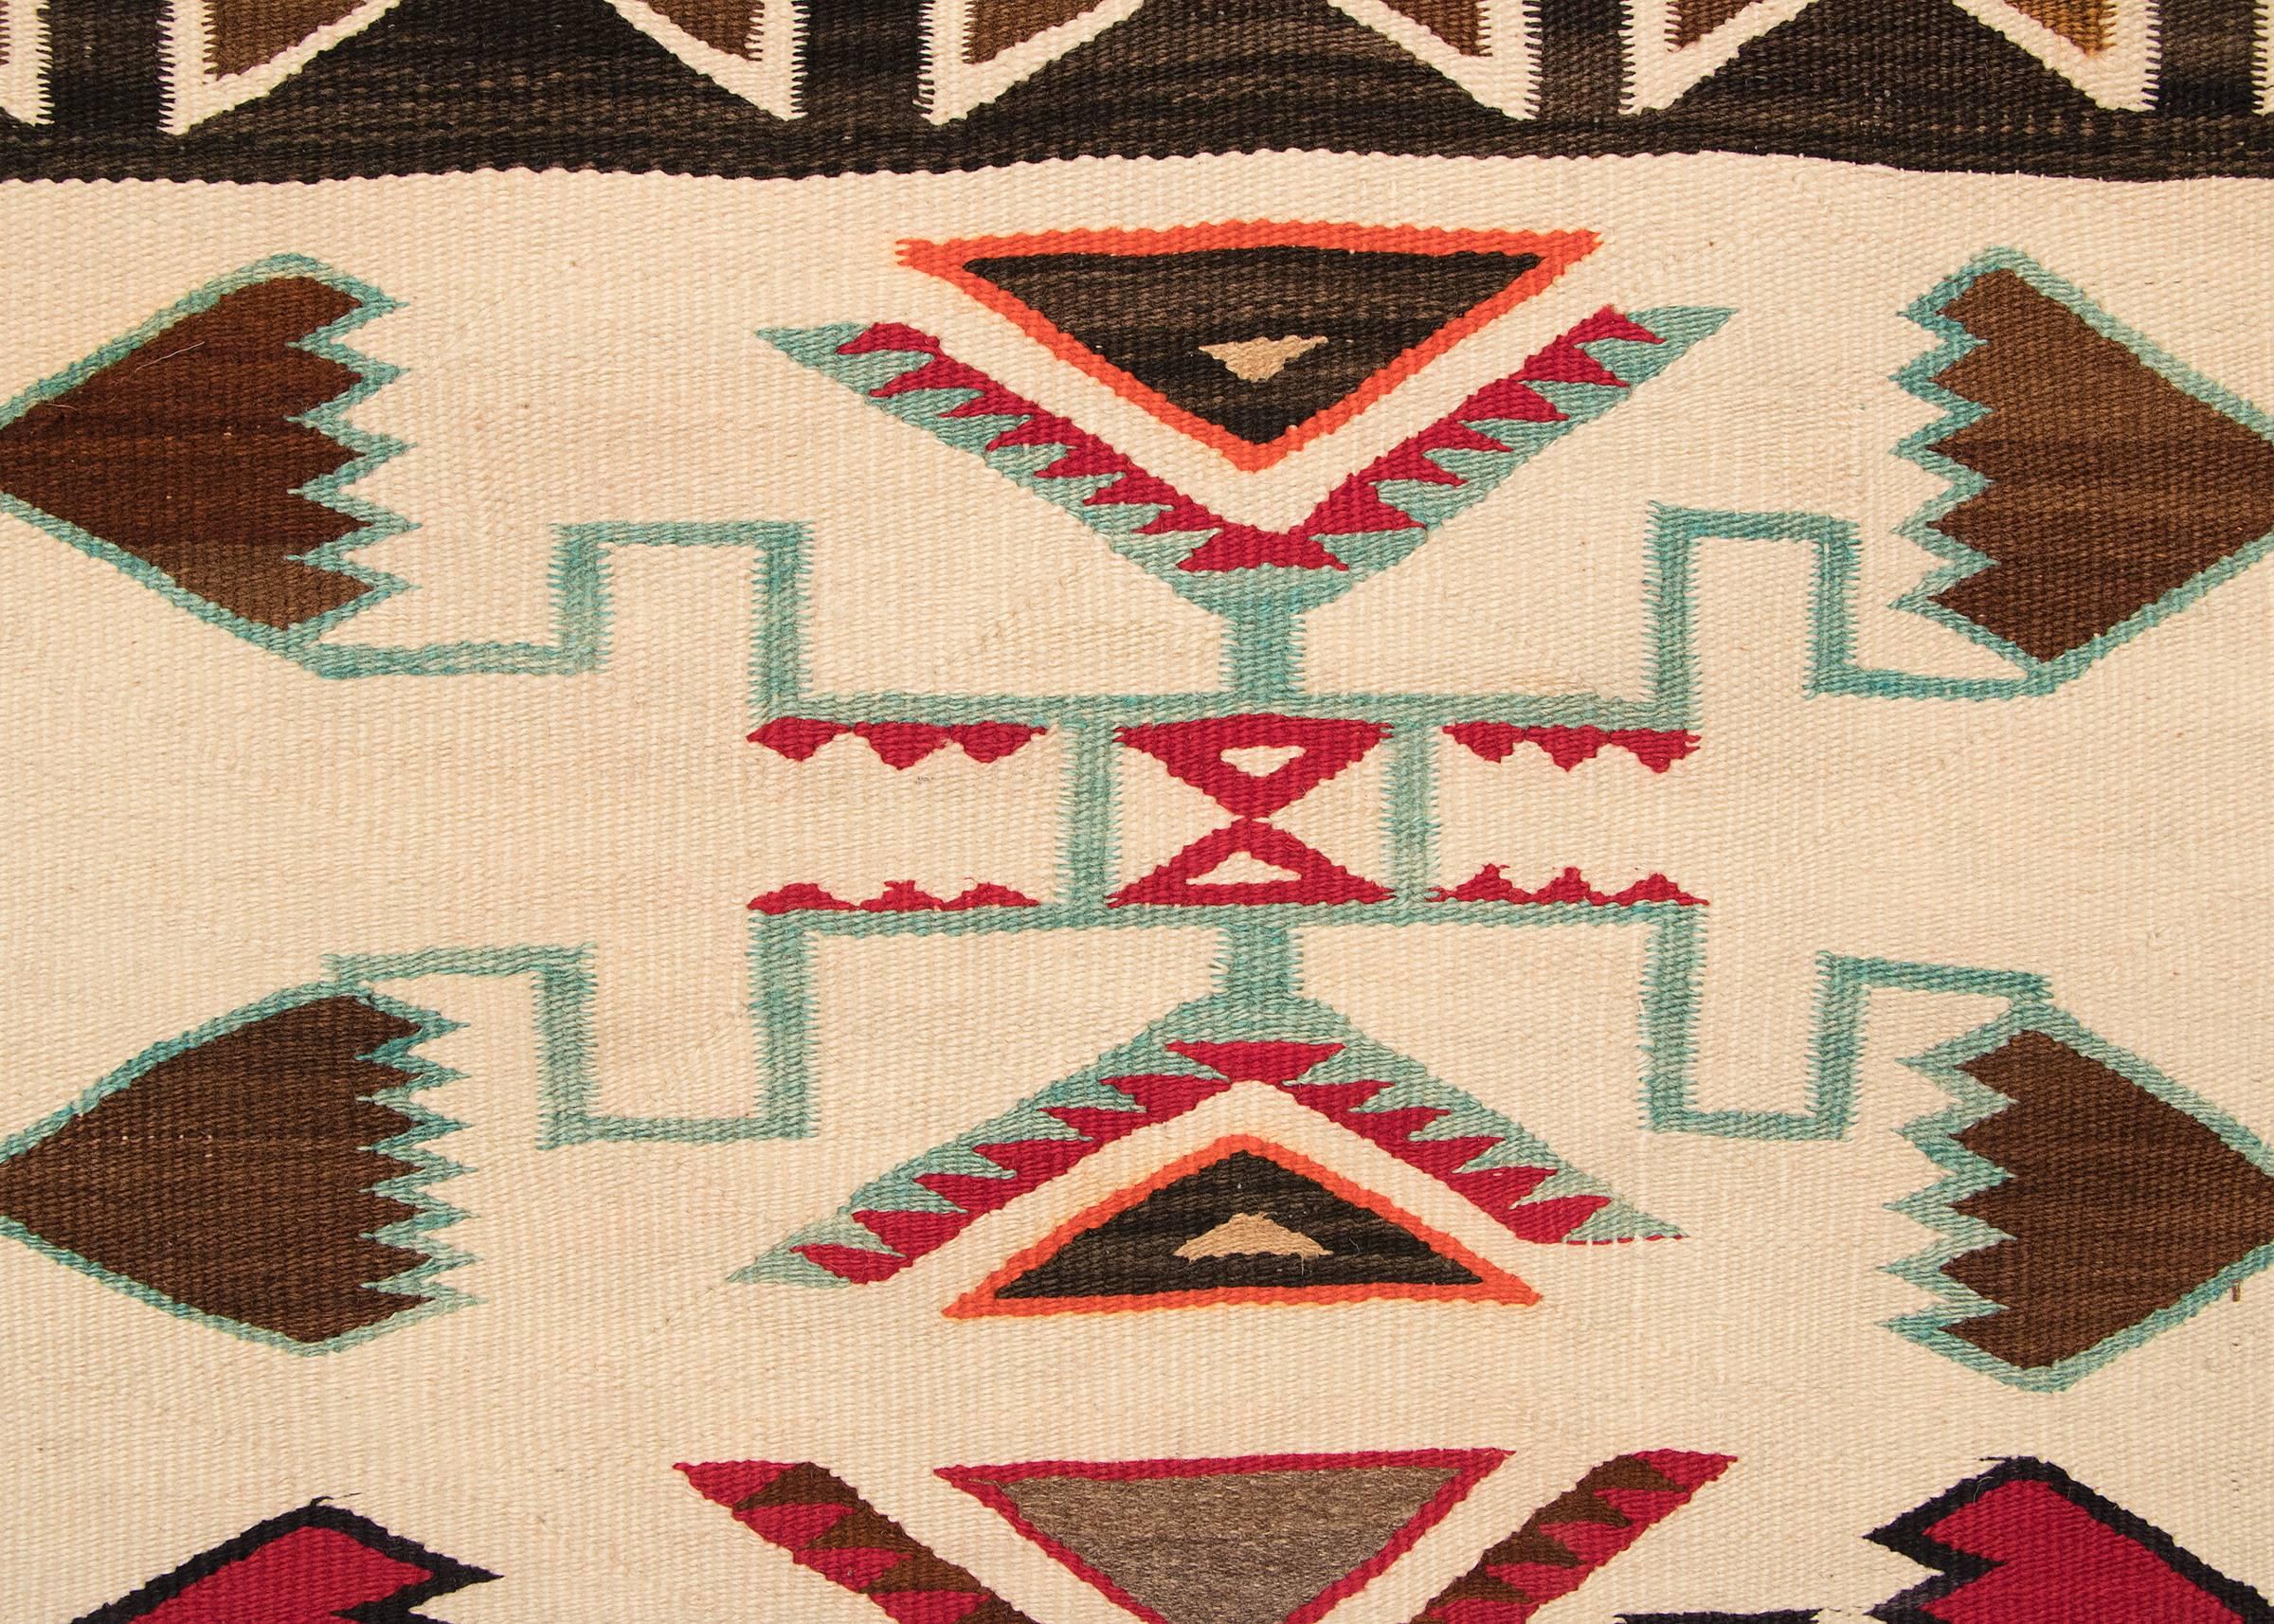 Woven Vintage Navajo Trading Post Rug, Teec Nos Pos, circa 1920-1940